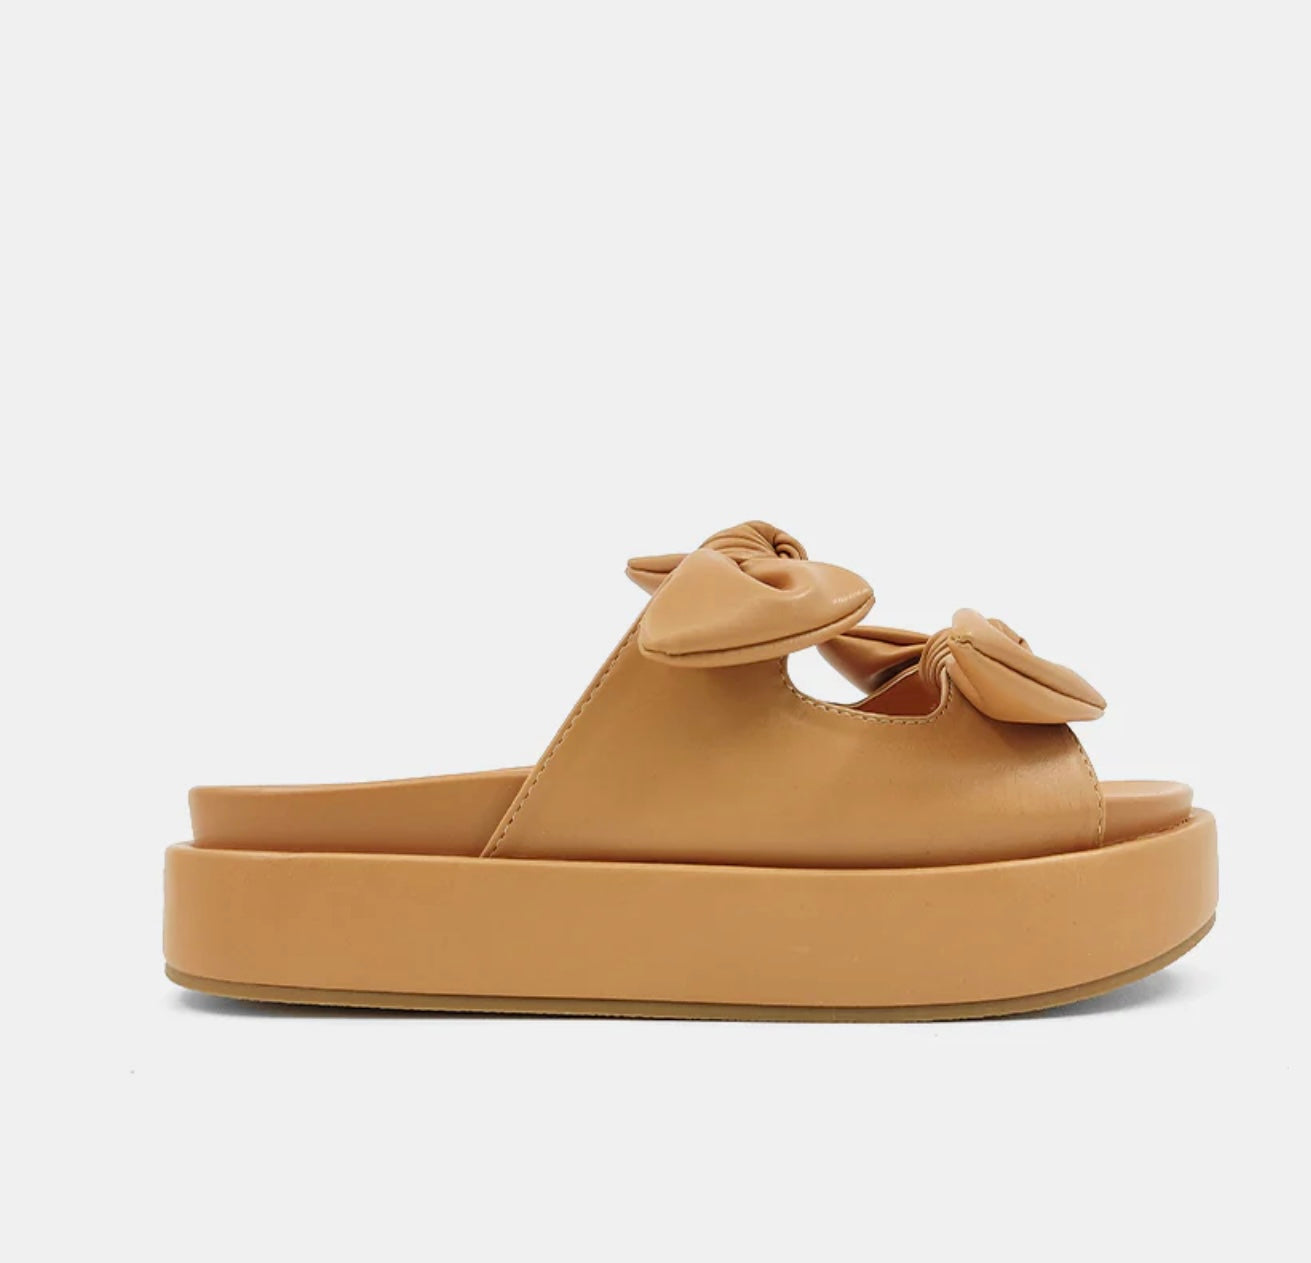 KiKi Camel Flatform Sandals